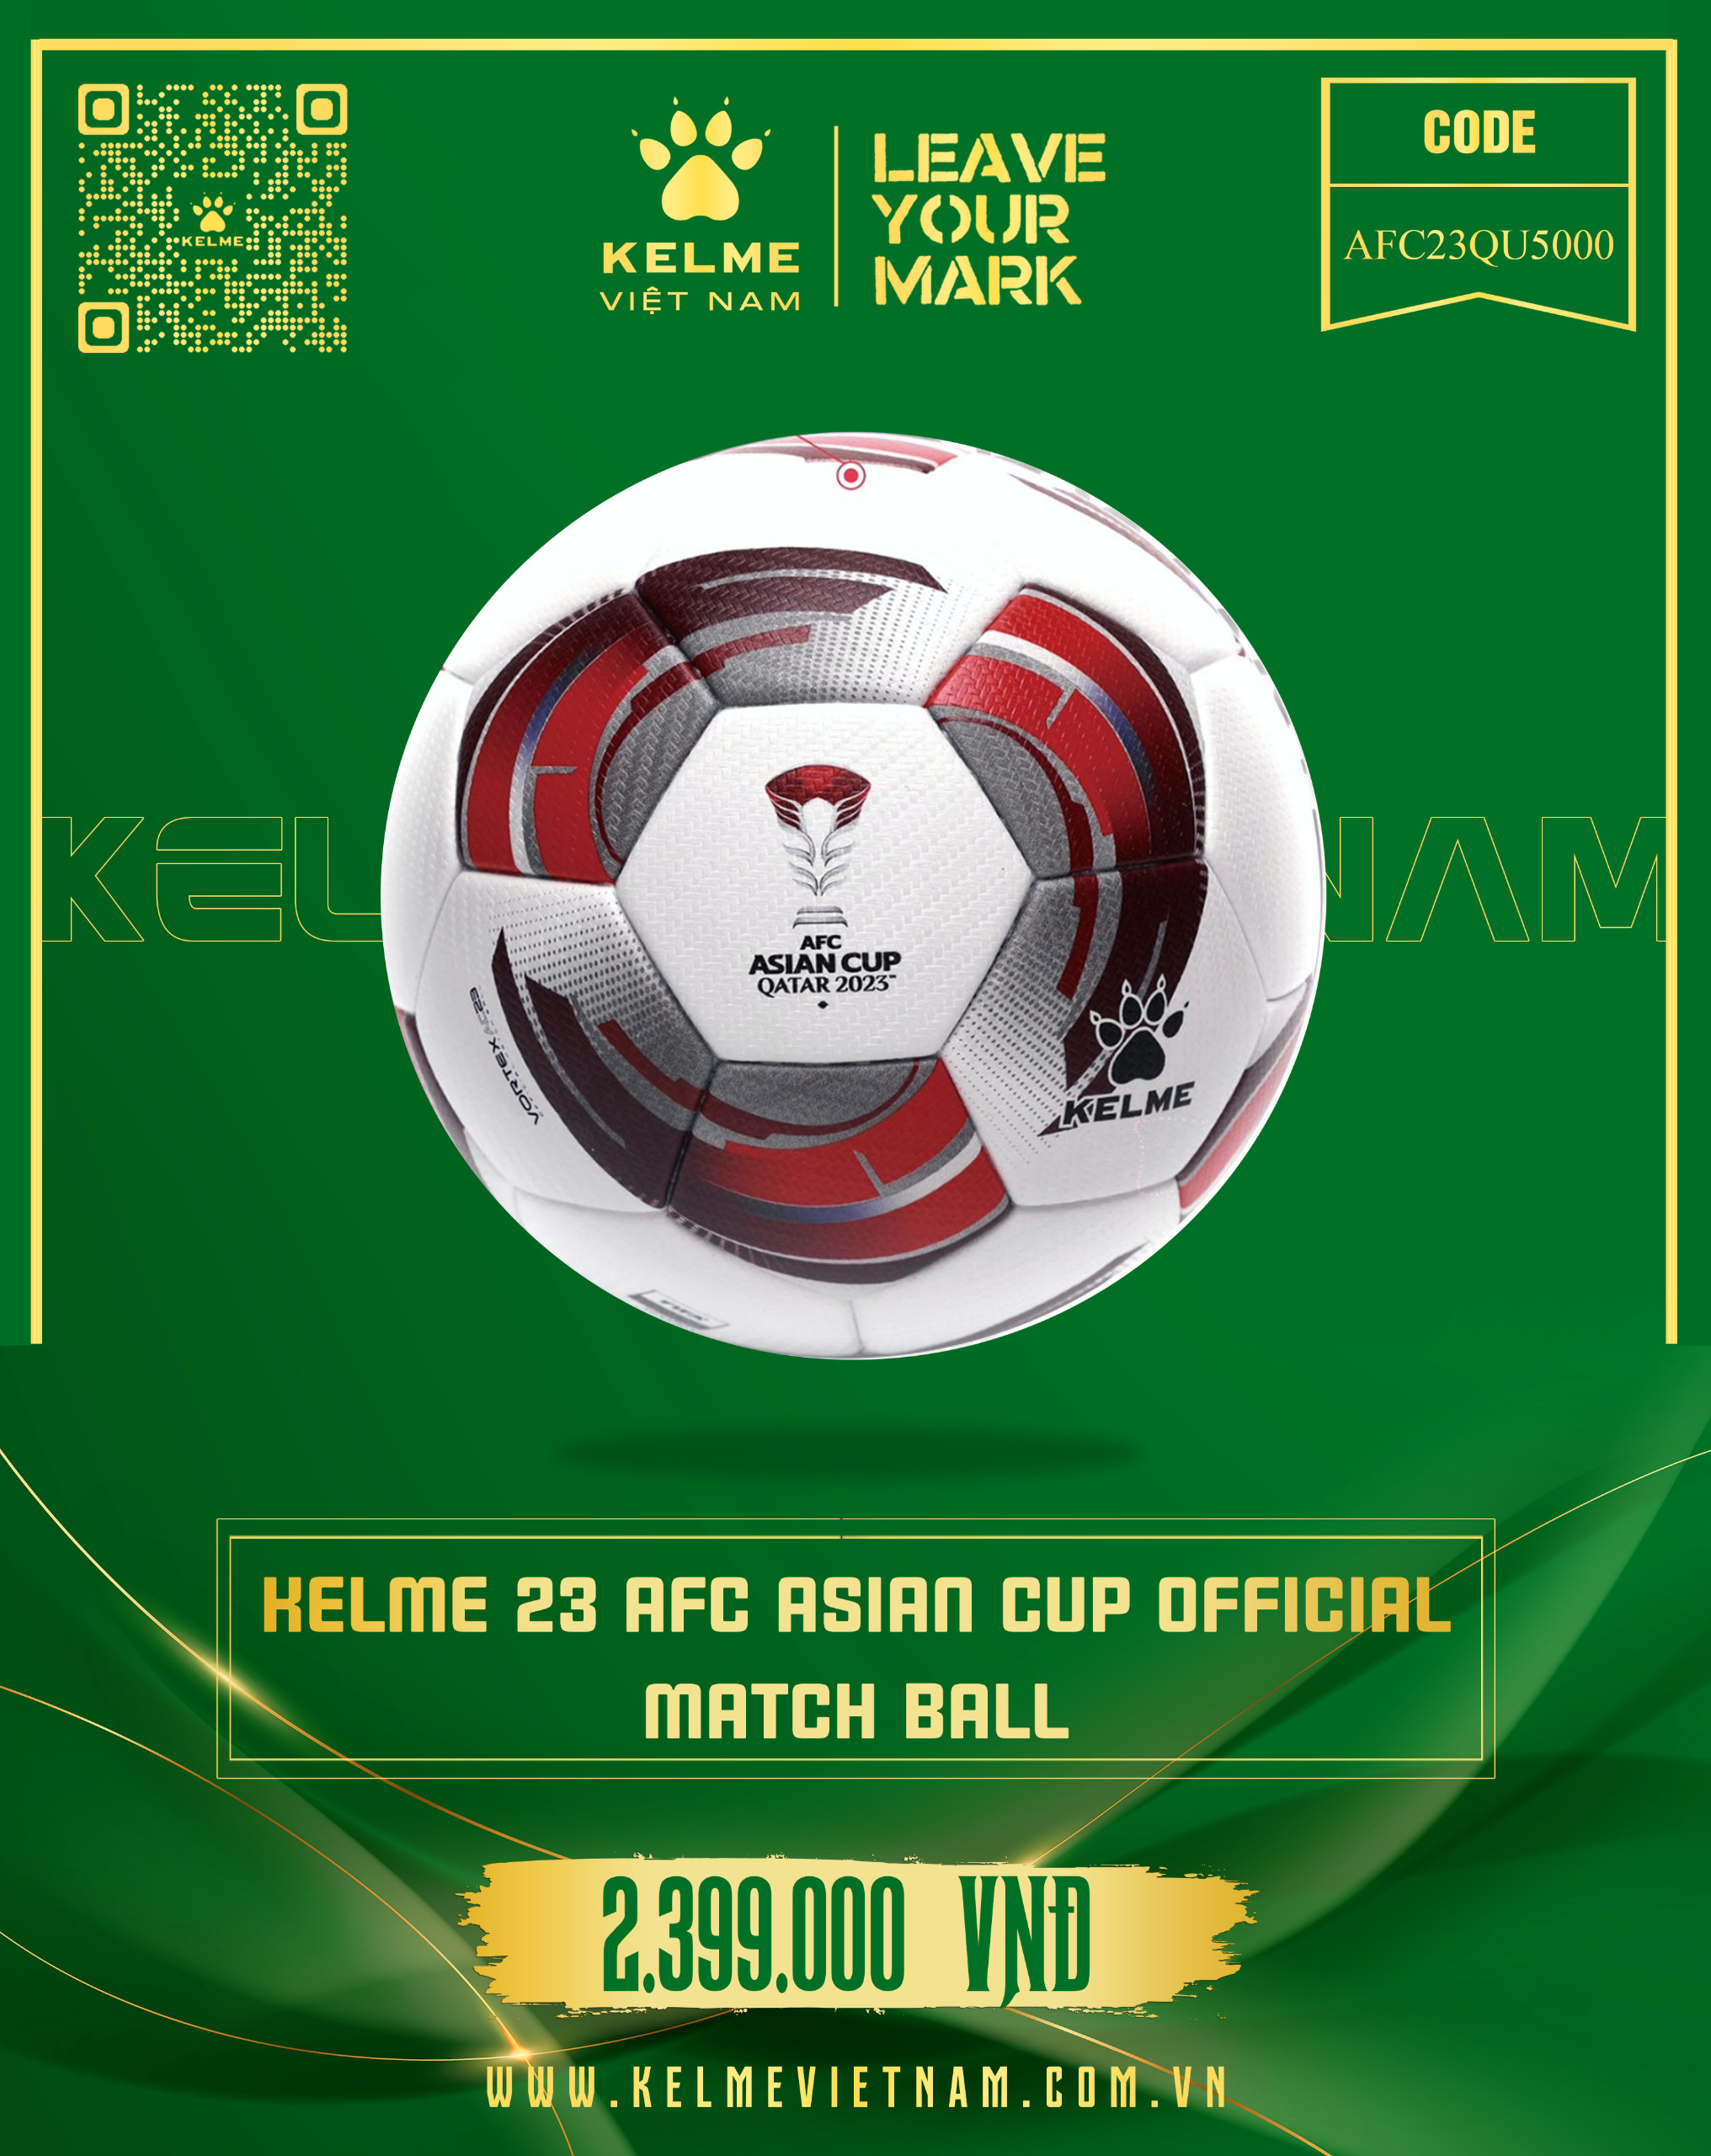 KELME 23 AFC ASIAN CUP OFFICIAL MATCH BALL